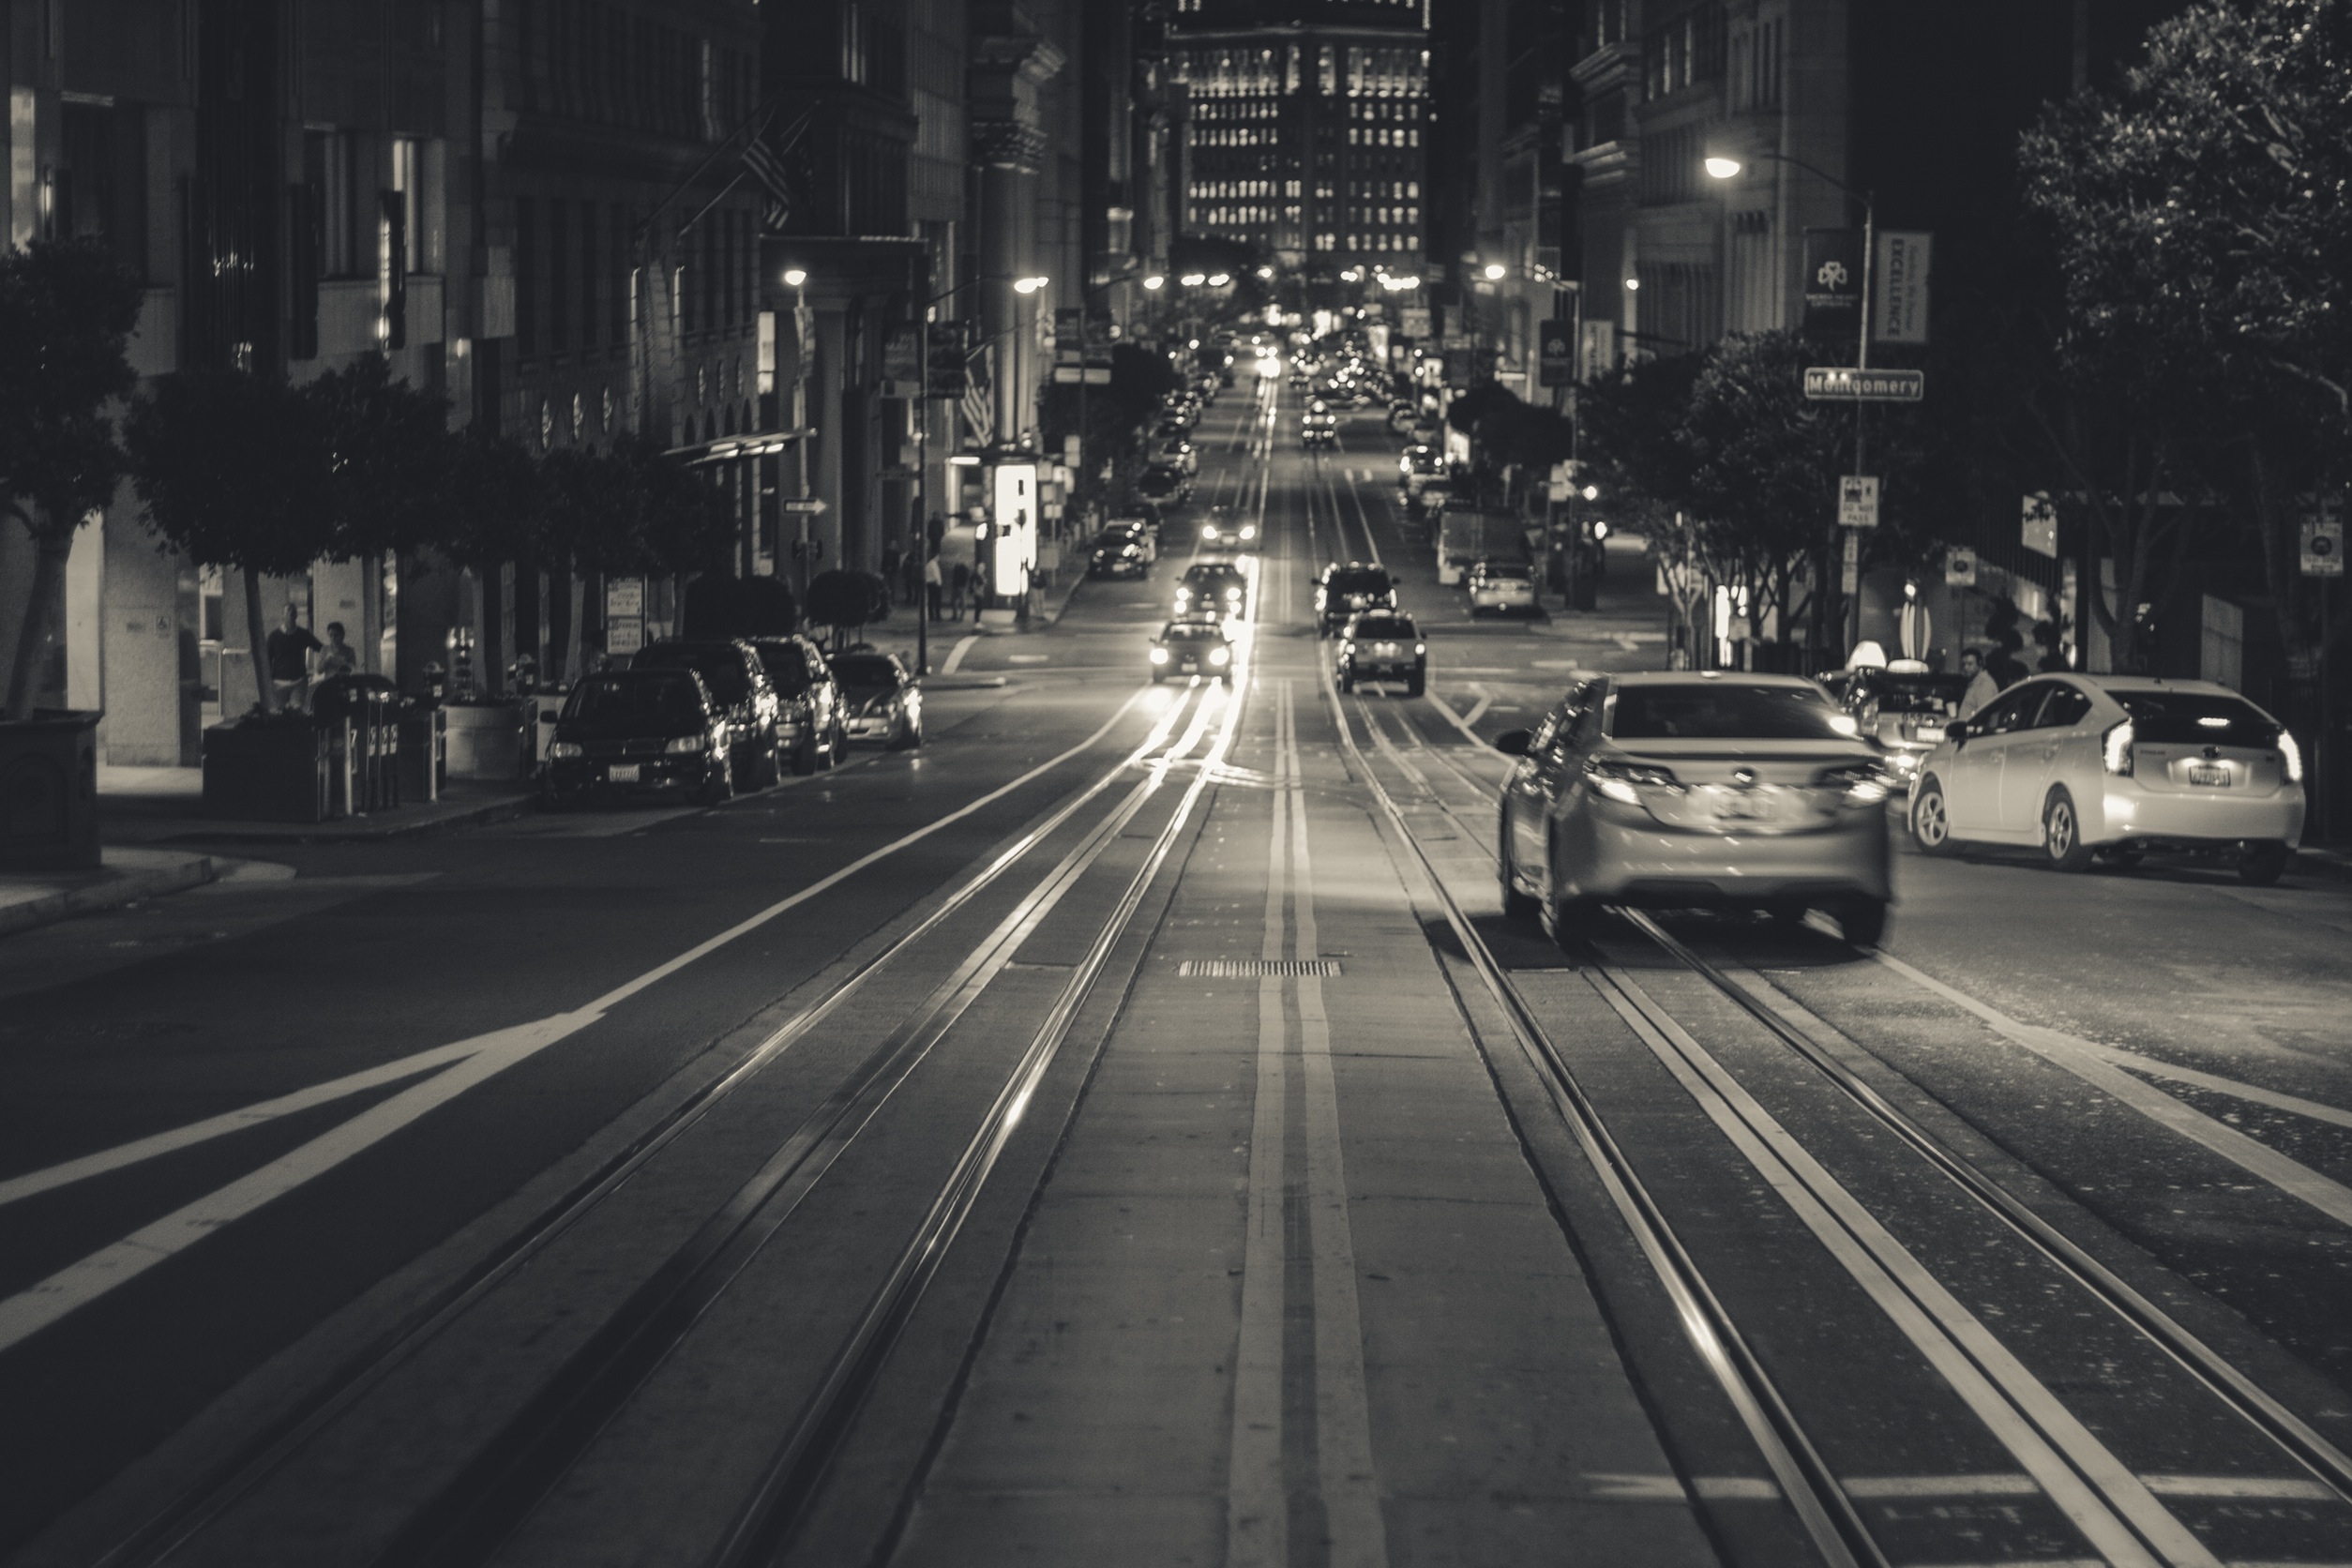 免费照片一张繁忙城市道路的黑白照片